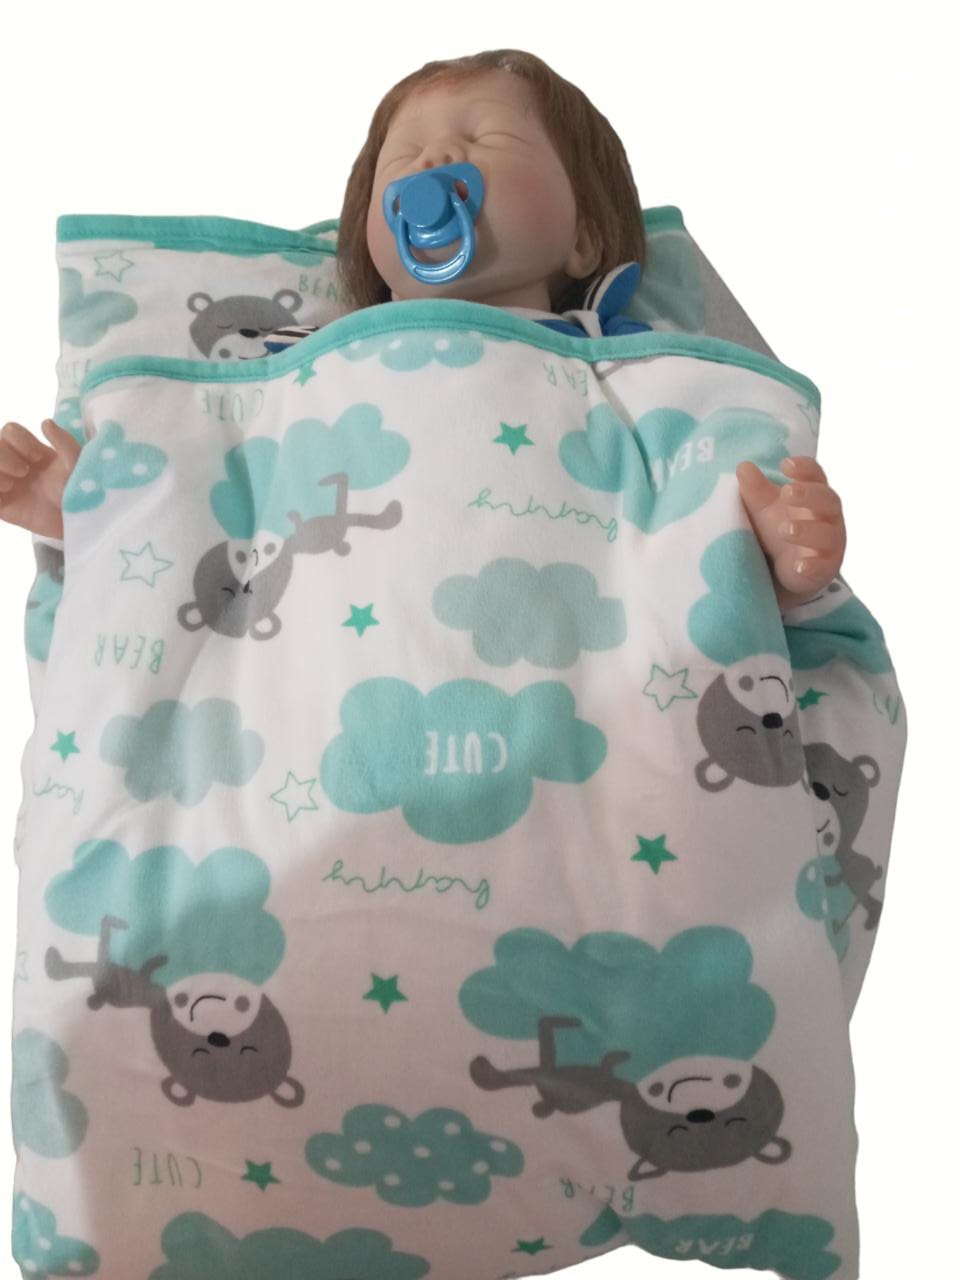 Manta Cobertor En Sleeping Azul y Blanco con Mangas Para Bebe